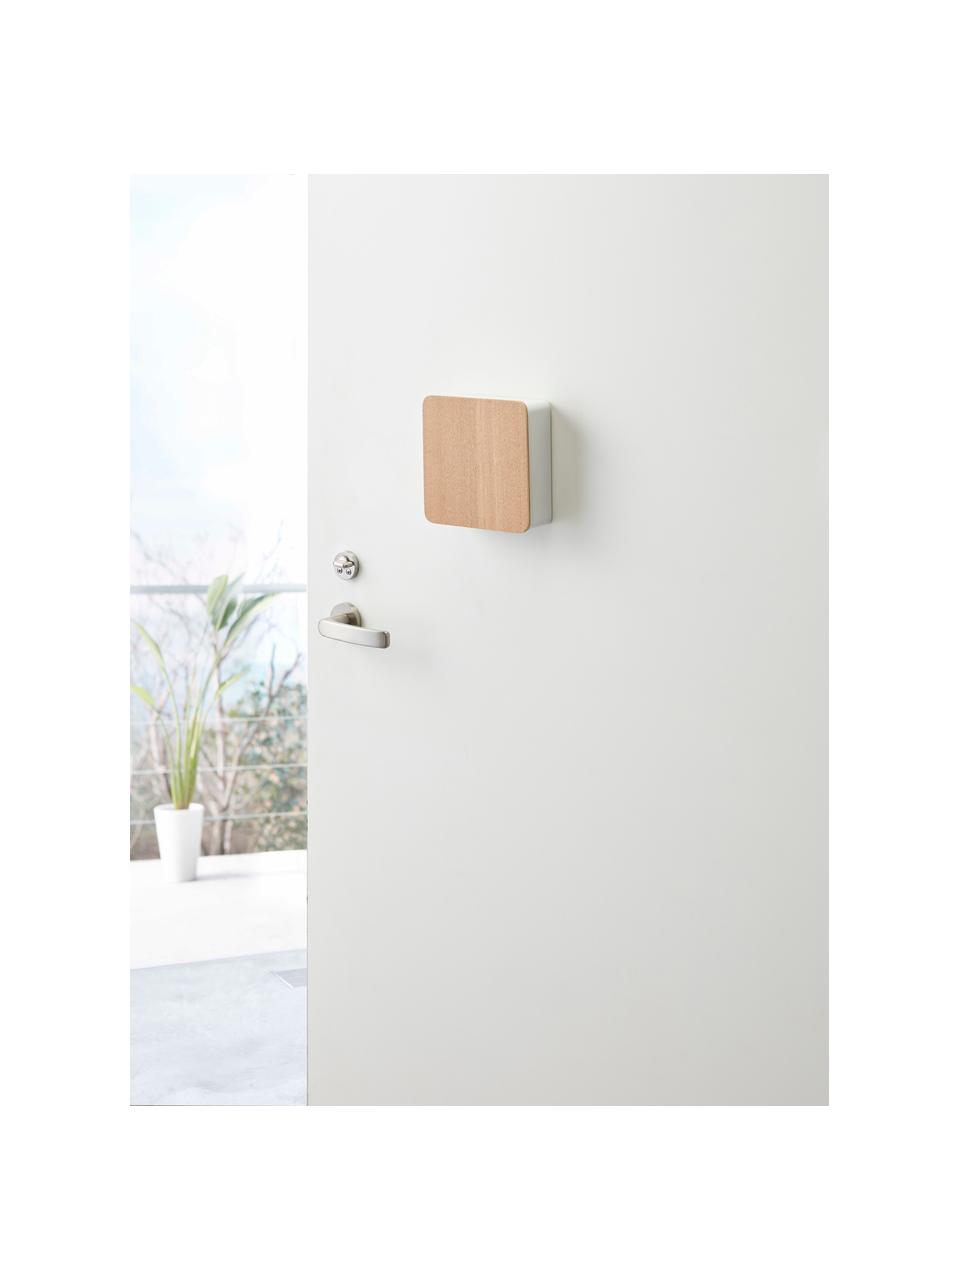 Boîte à clés avec dos magnétique Rin, Blanc, bois clair, larg. 16 x prof. 16 cm